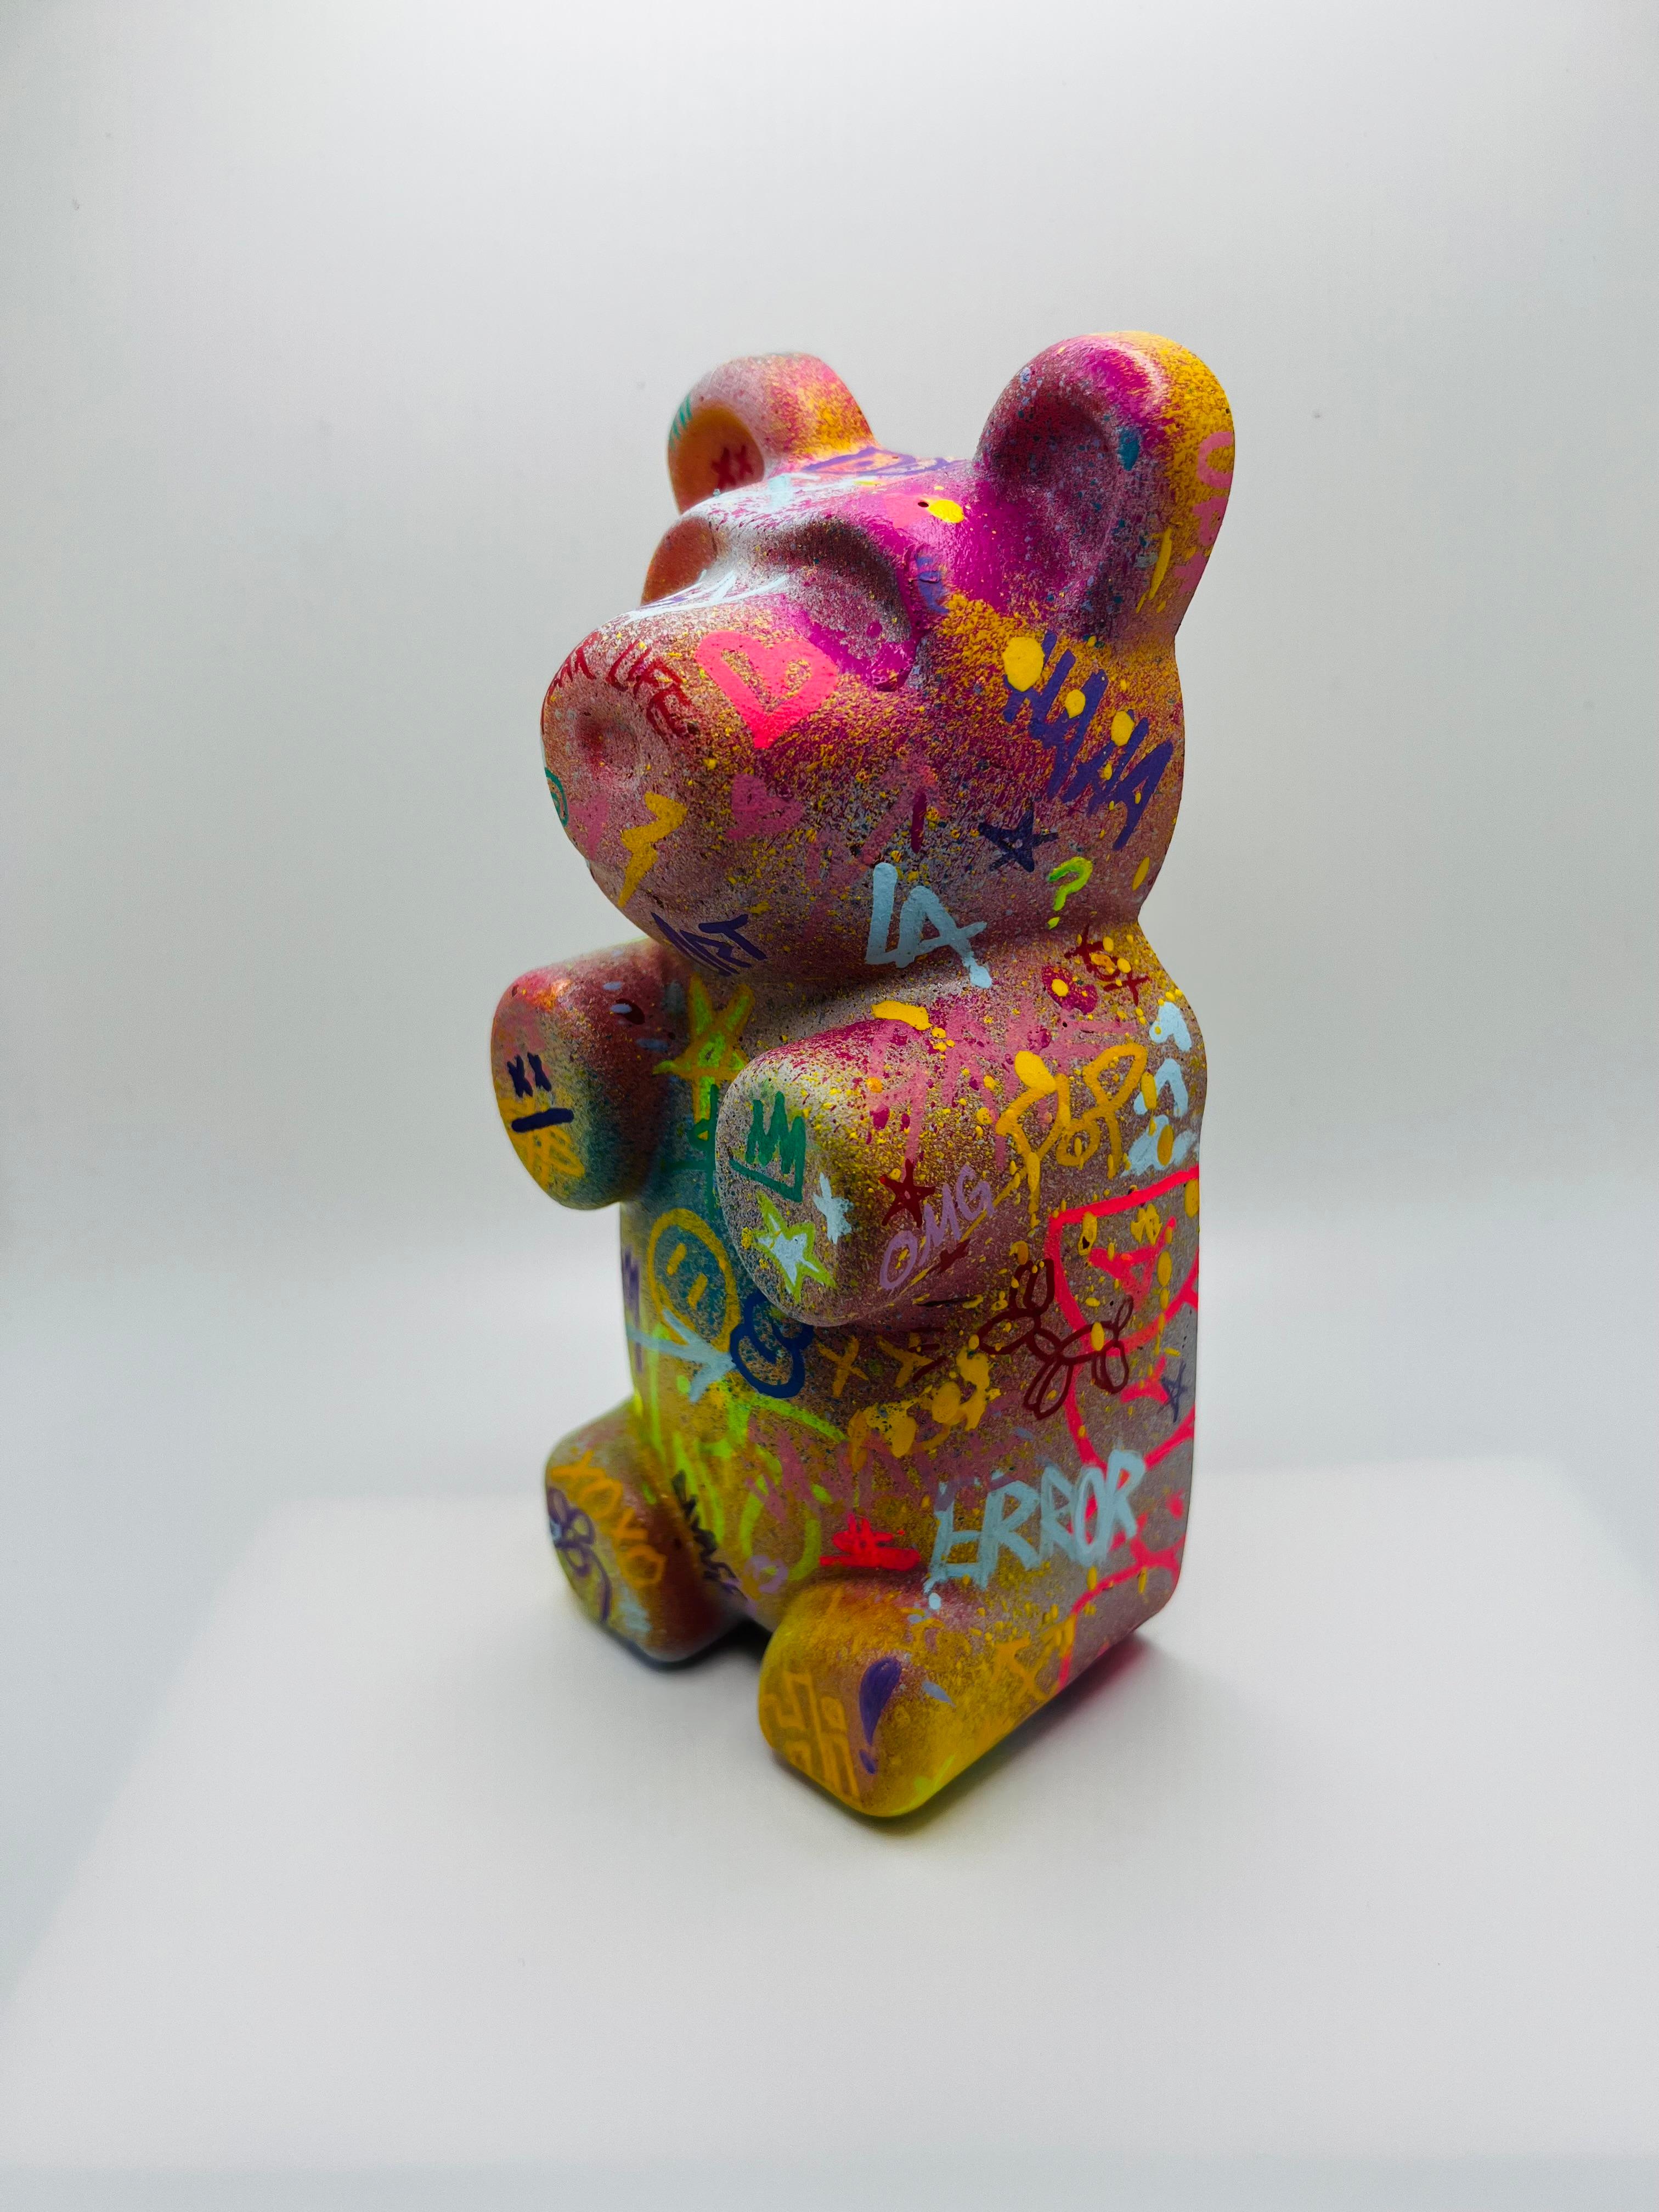 Graffiti Gummy bear 1, street art, pop art, colorful, contemporary, sculpture